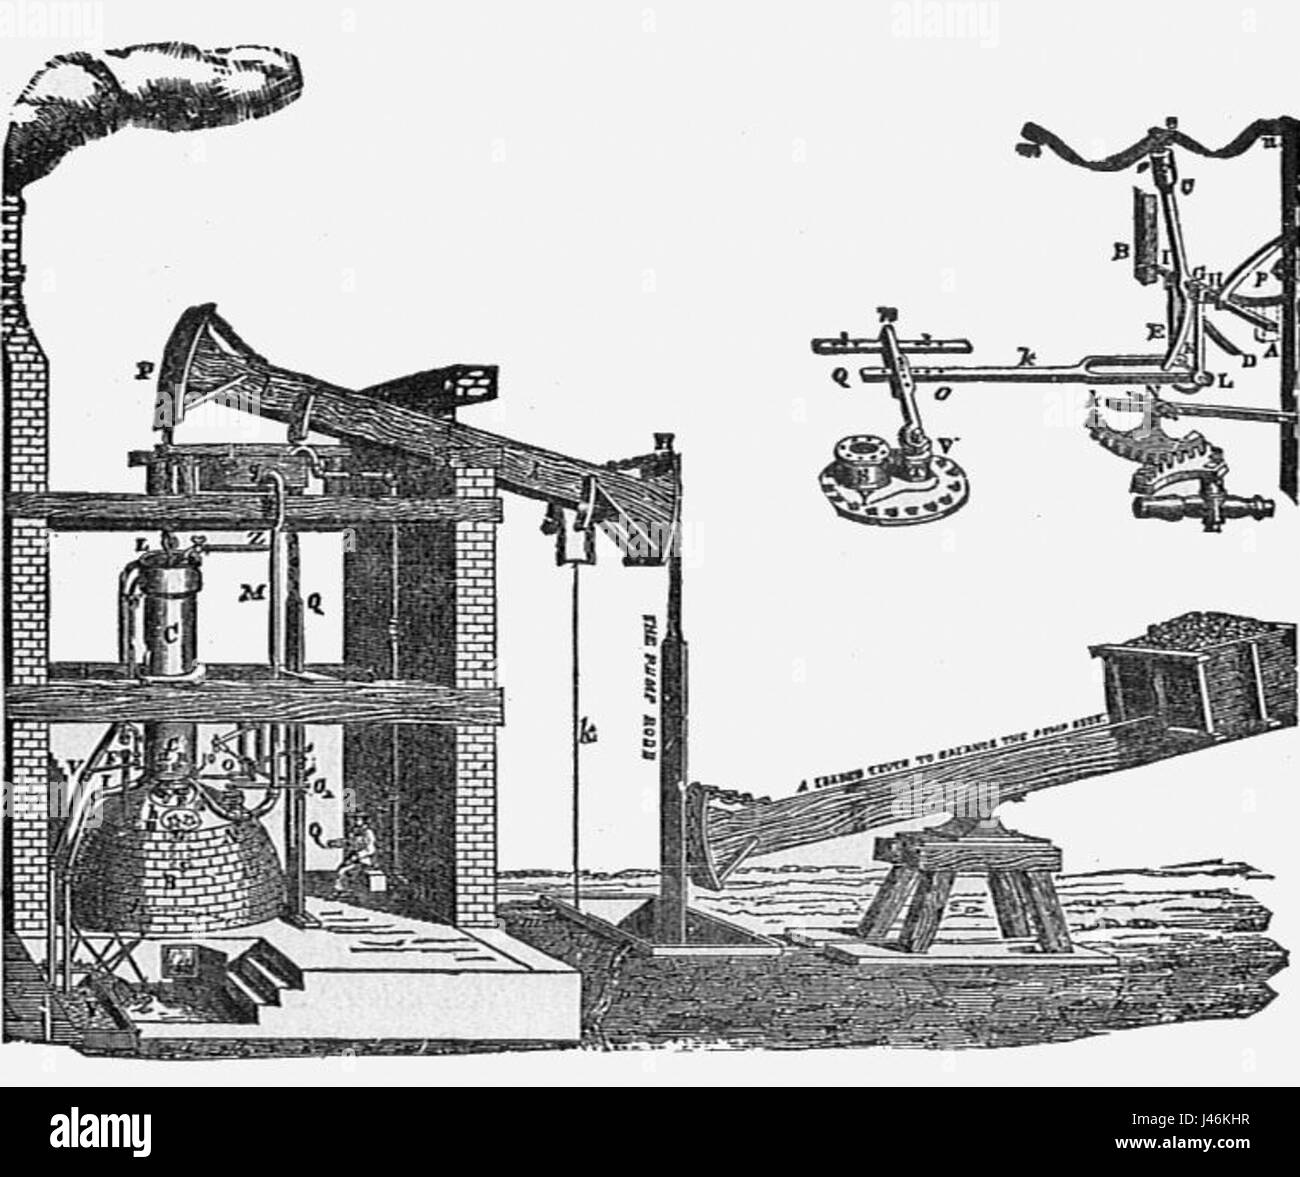 Где был изобретен первый промышленный робот. Паровая машина Ползунова. Паровая машина Ньюкомена и Ползунова.